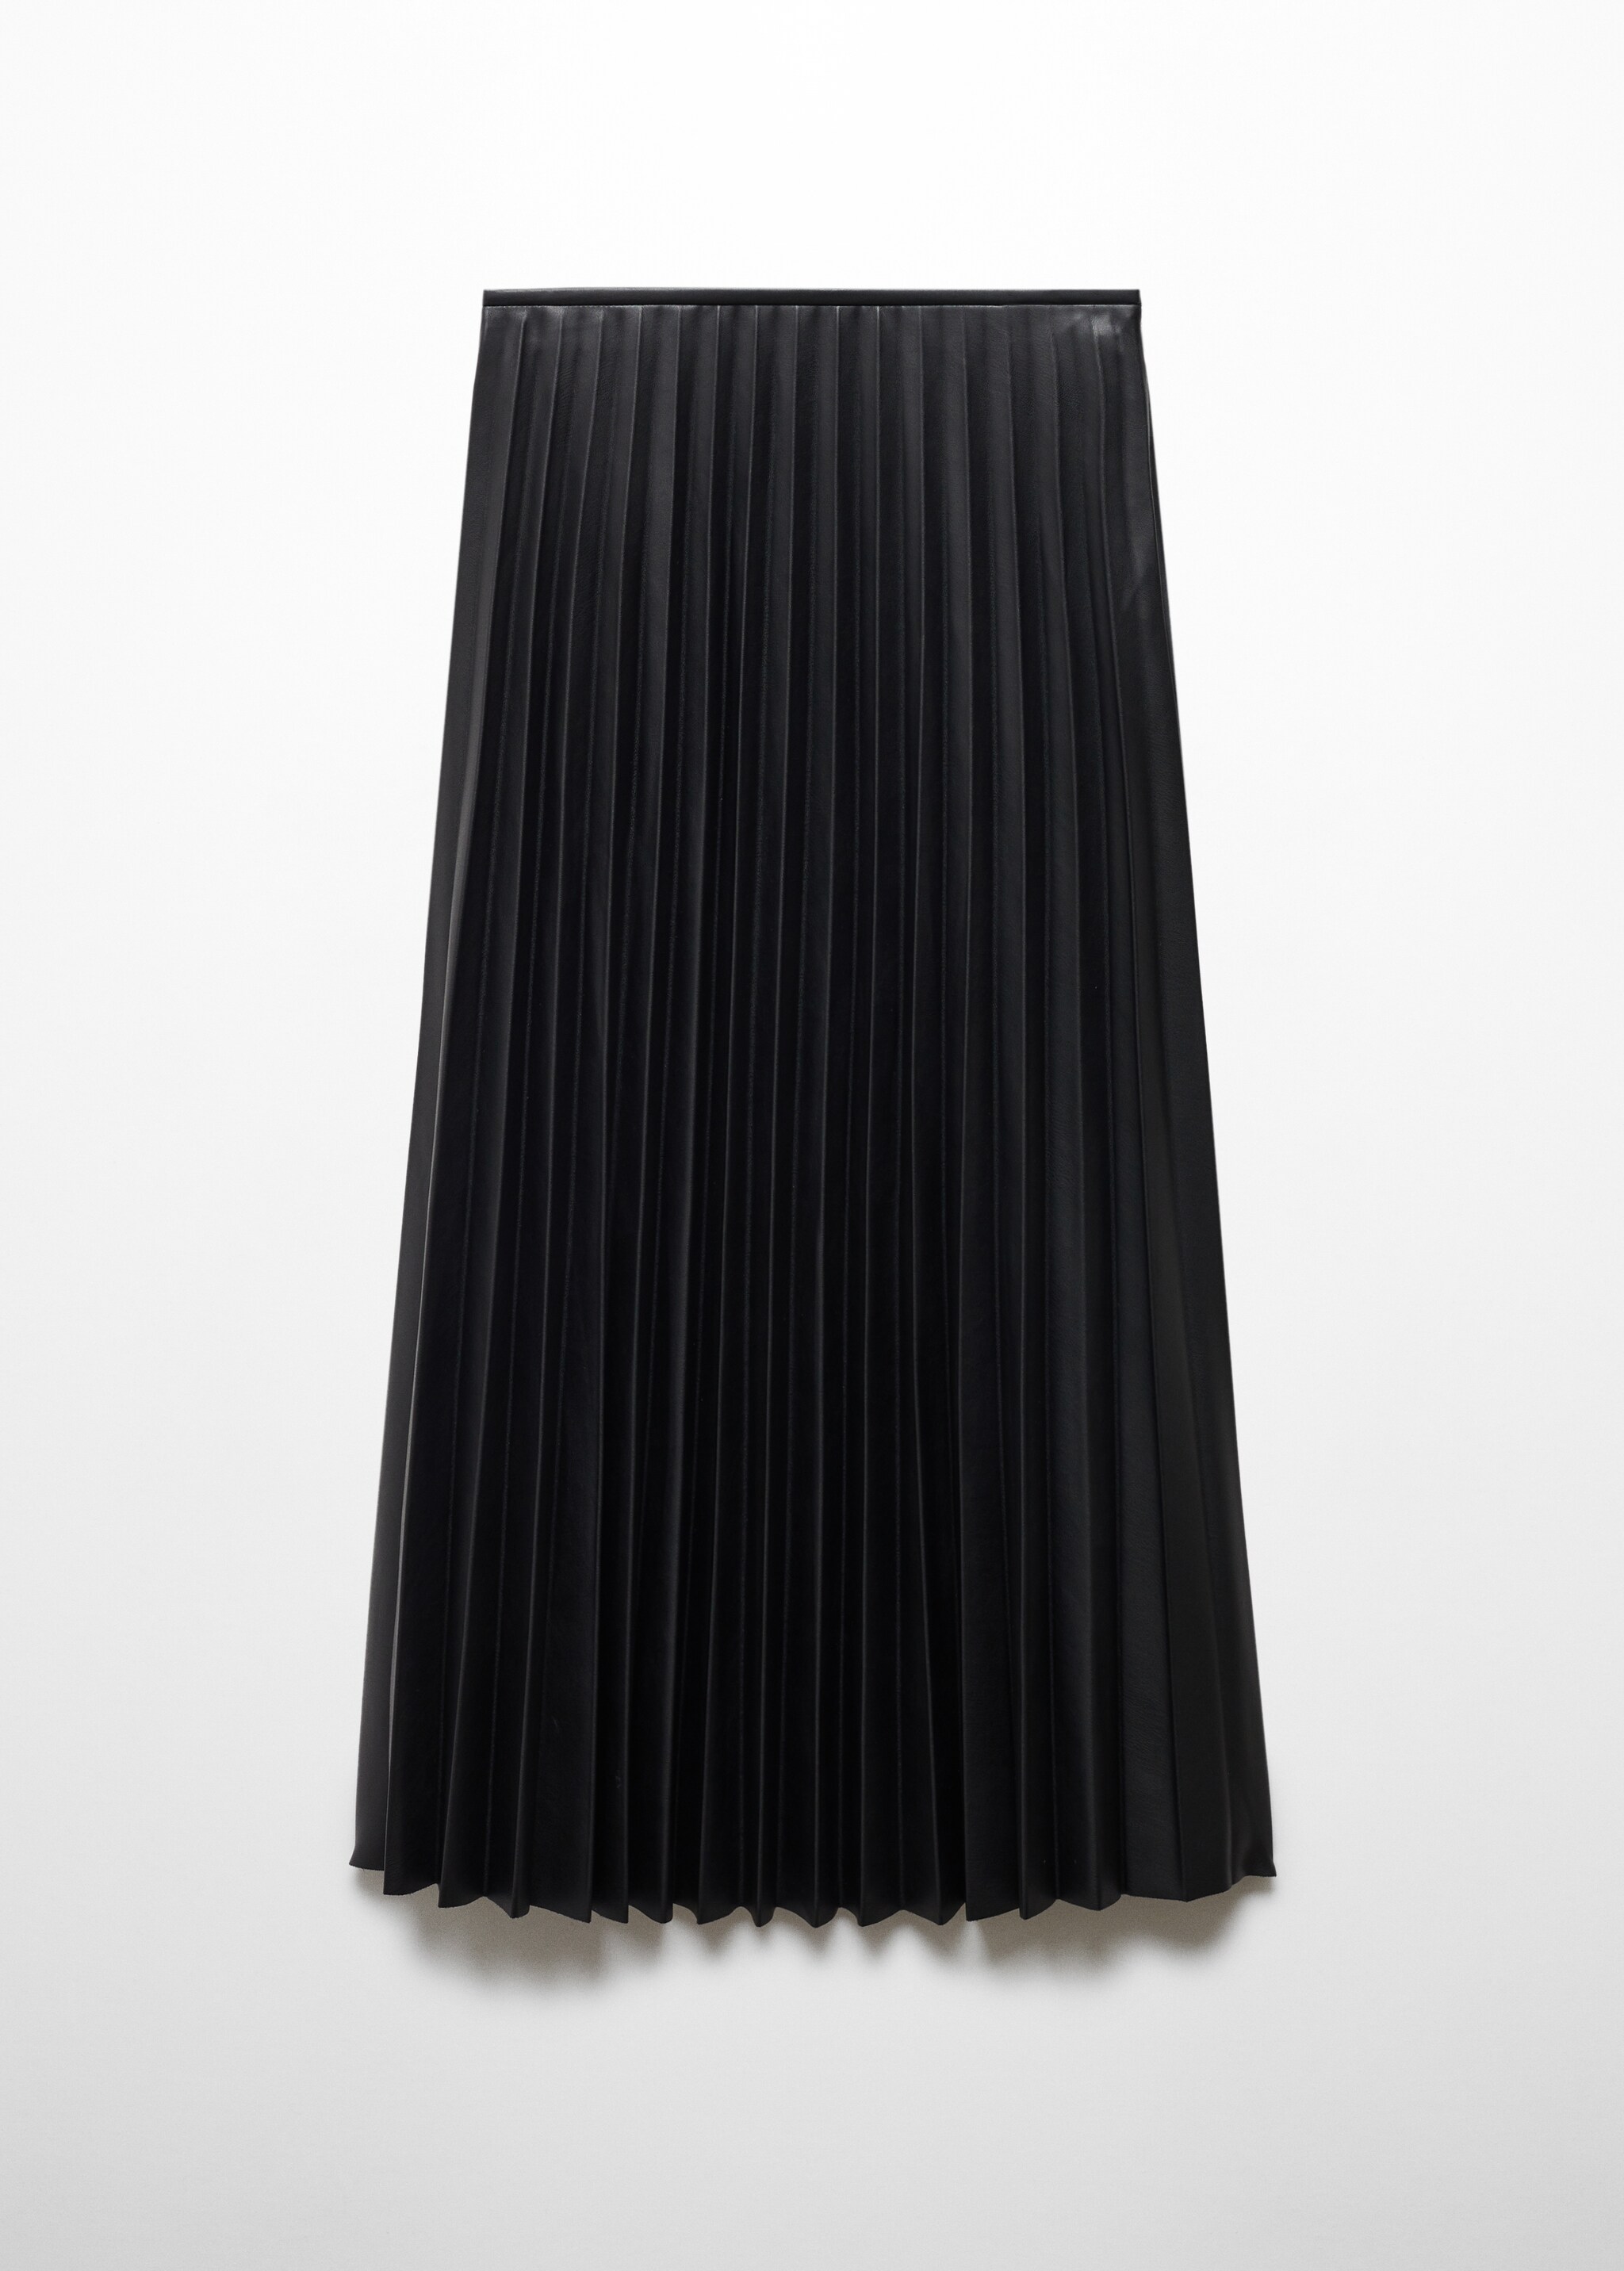 Плиссированная юбка из искусственной кожи - Изделие без модели